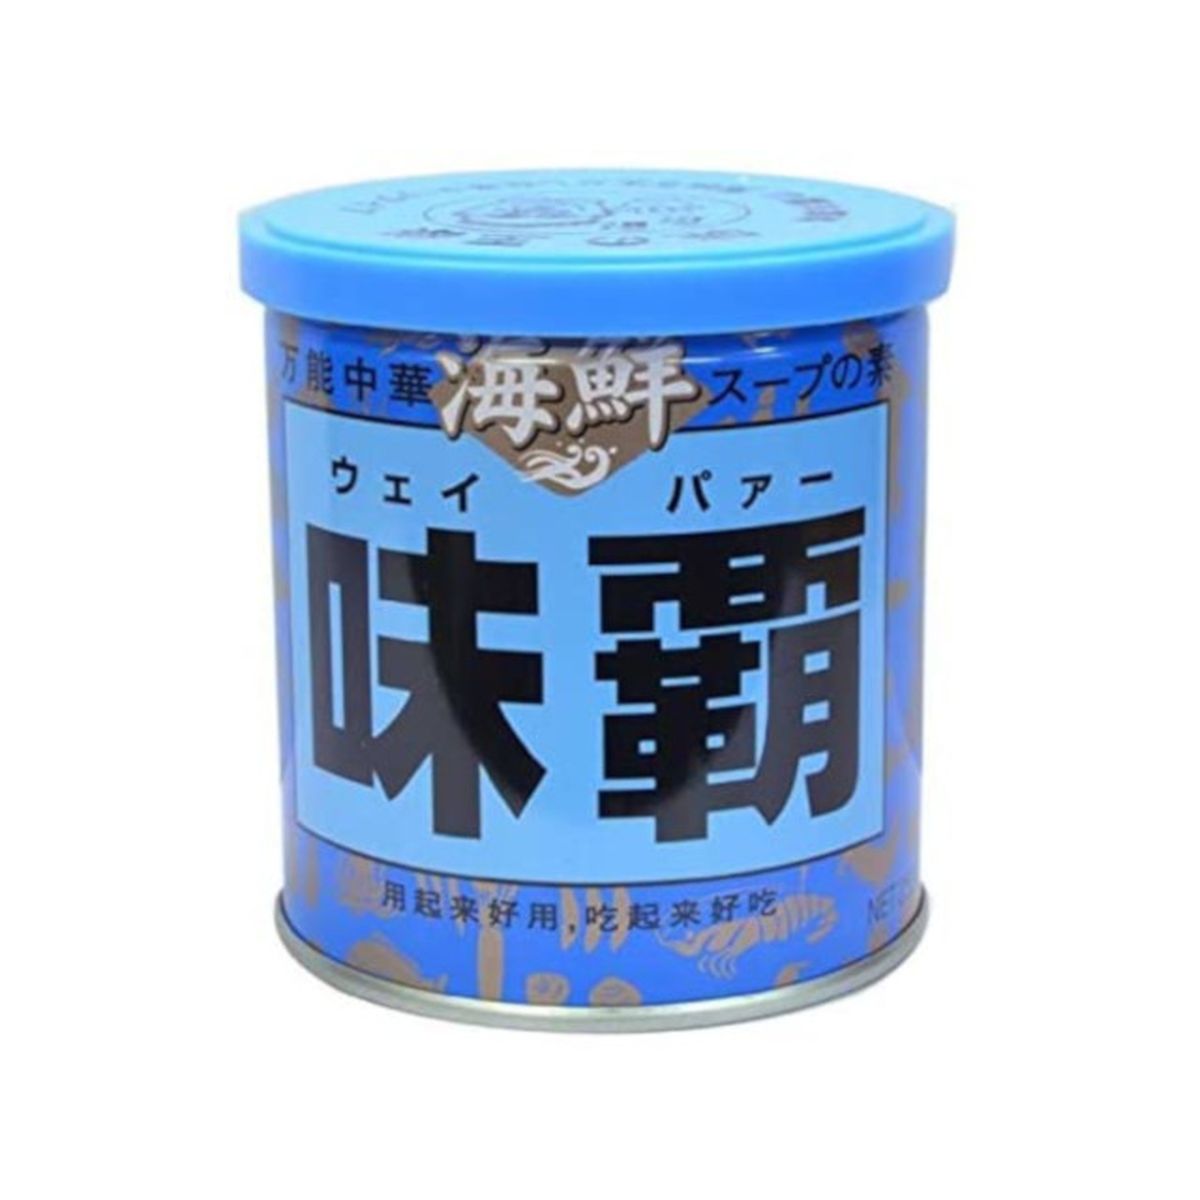 【12個入り】廣記商行 海鮮味覇 缶 250g